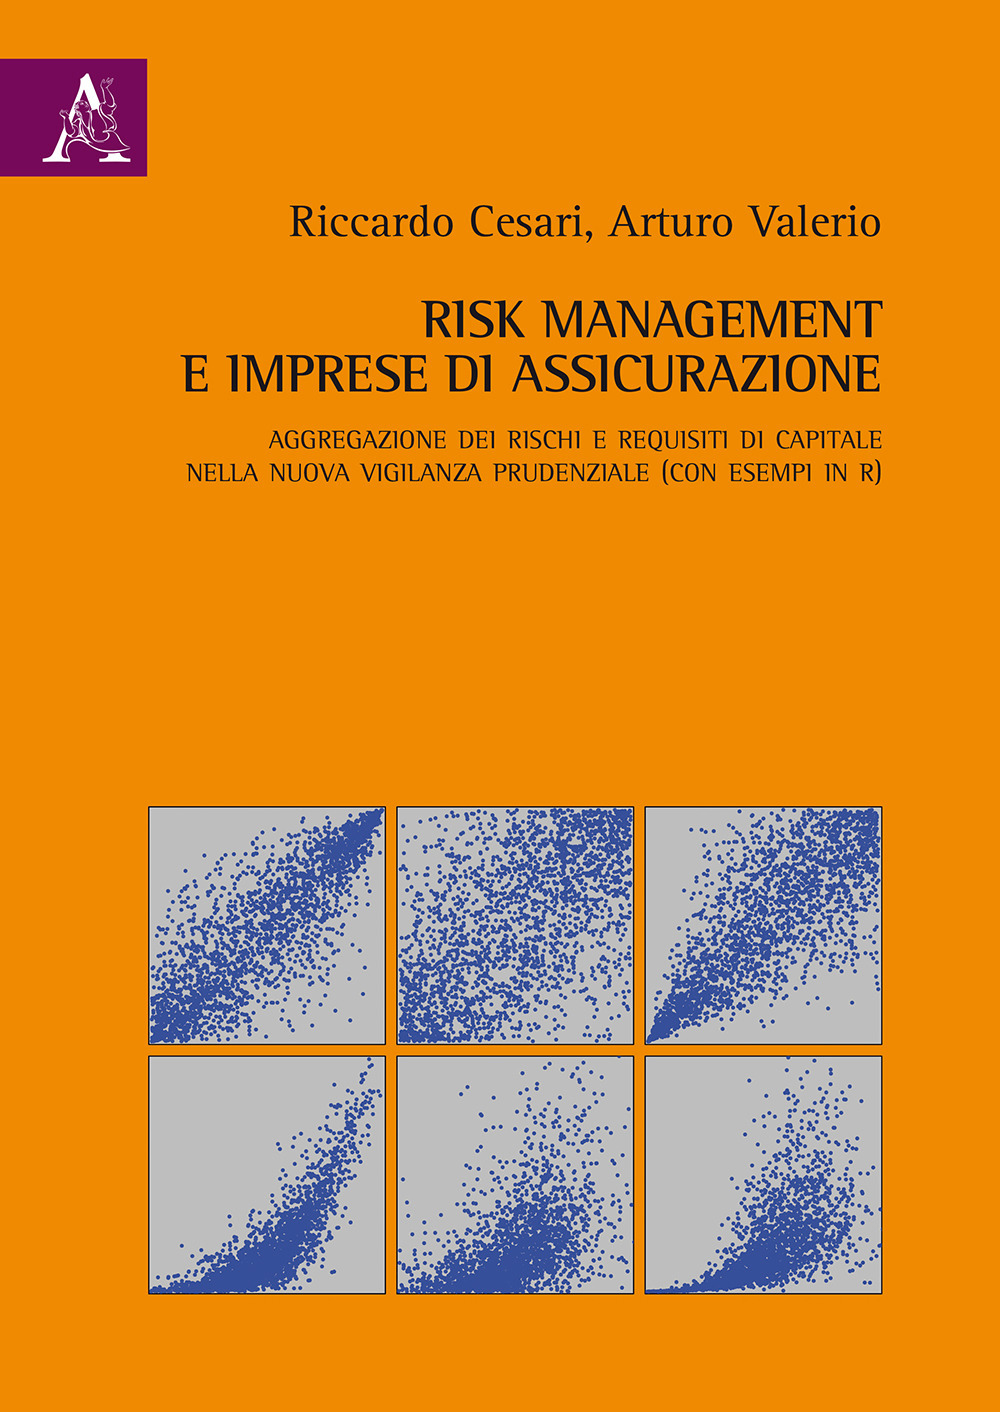 Risk management e imprese di assicurazione. Aggregazione dei rischi e requisiti di capitale nella nuova vigilanza prudenziale (con esempi in R)